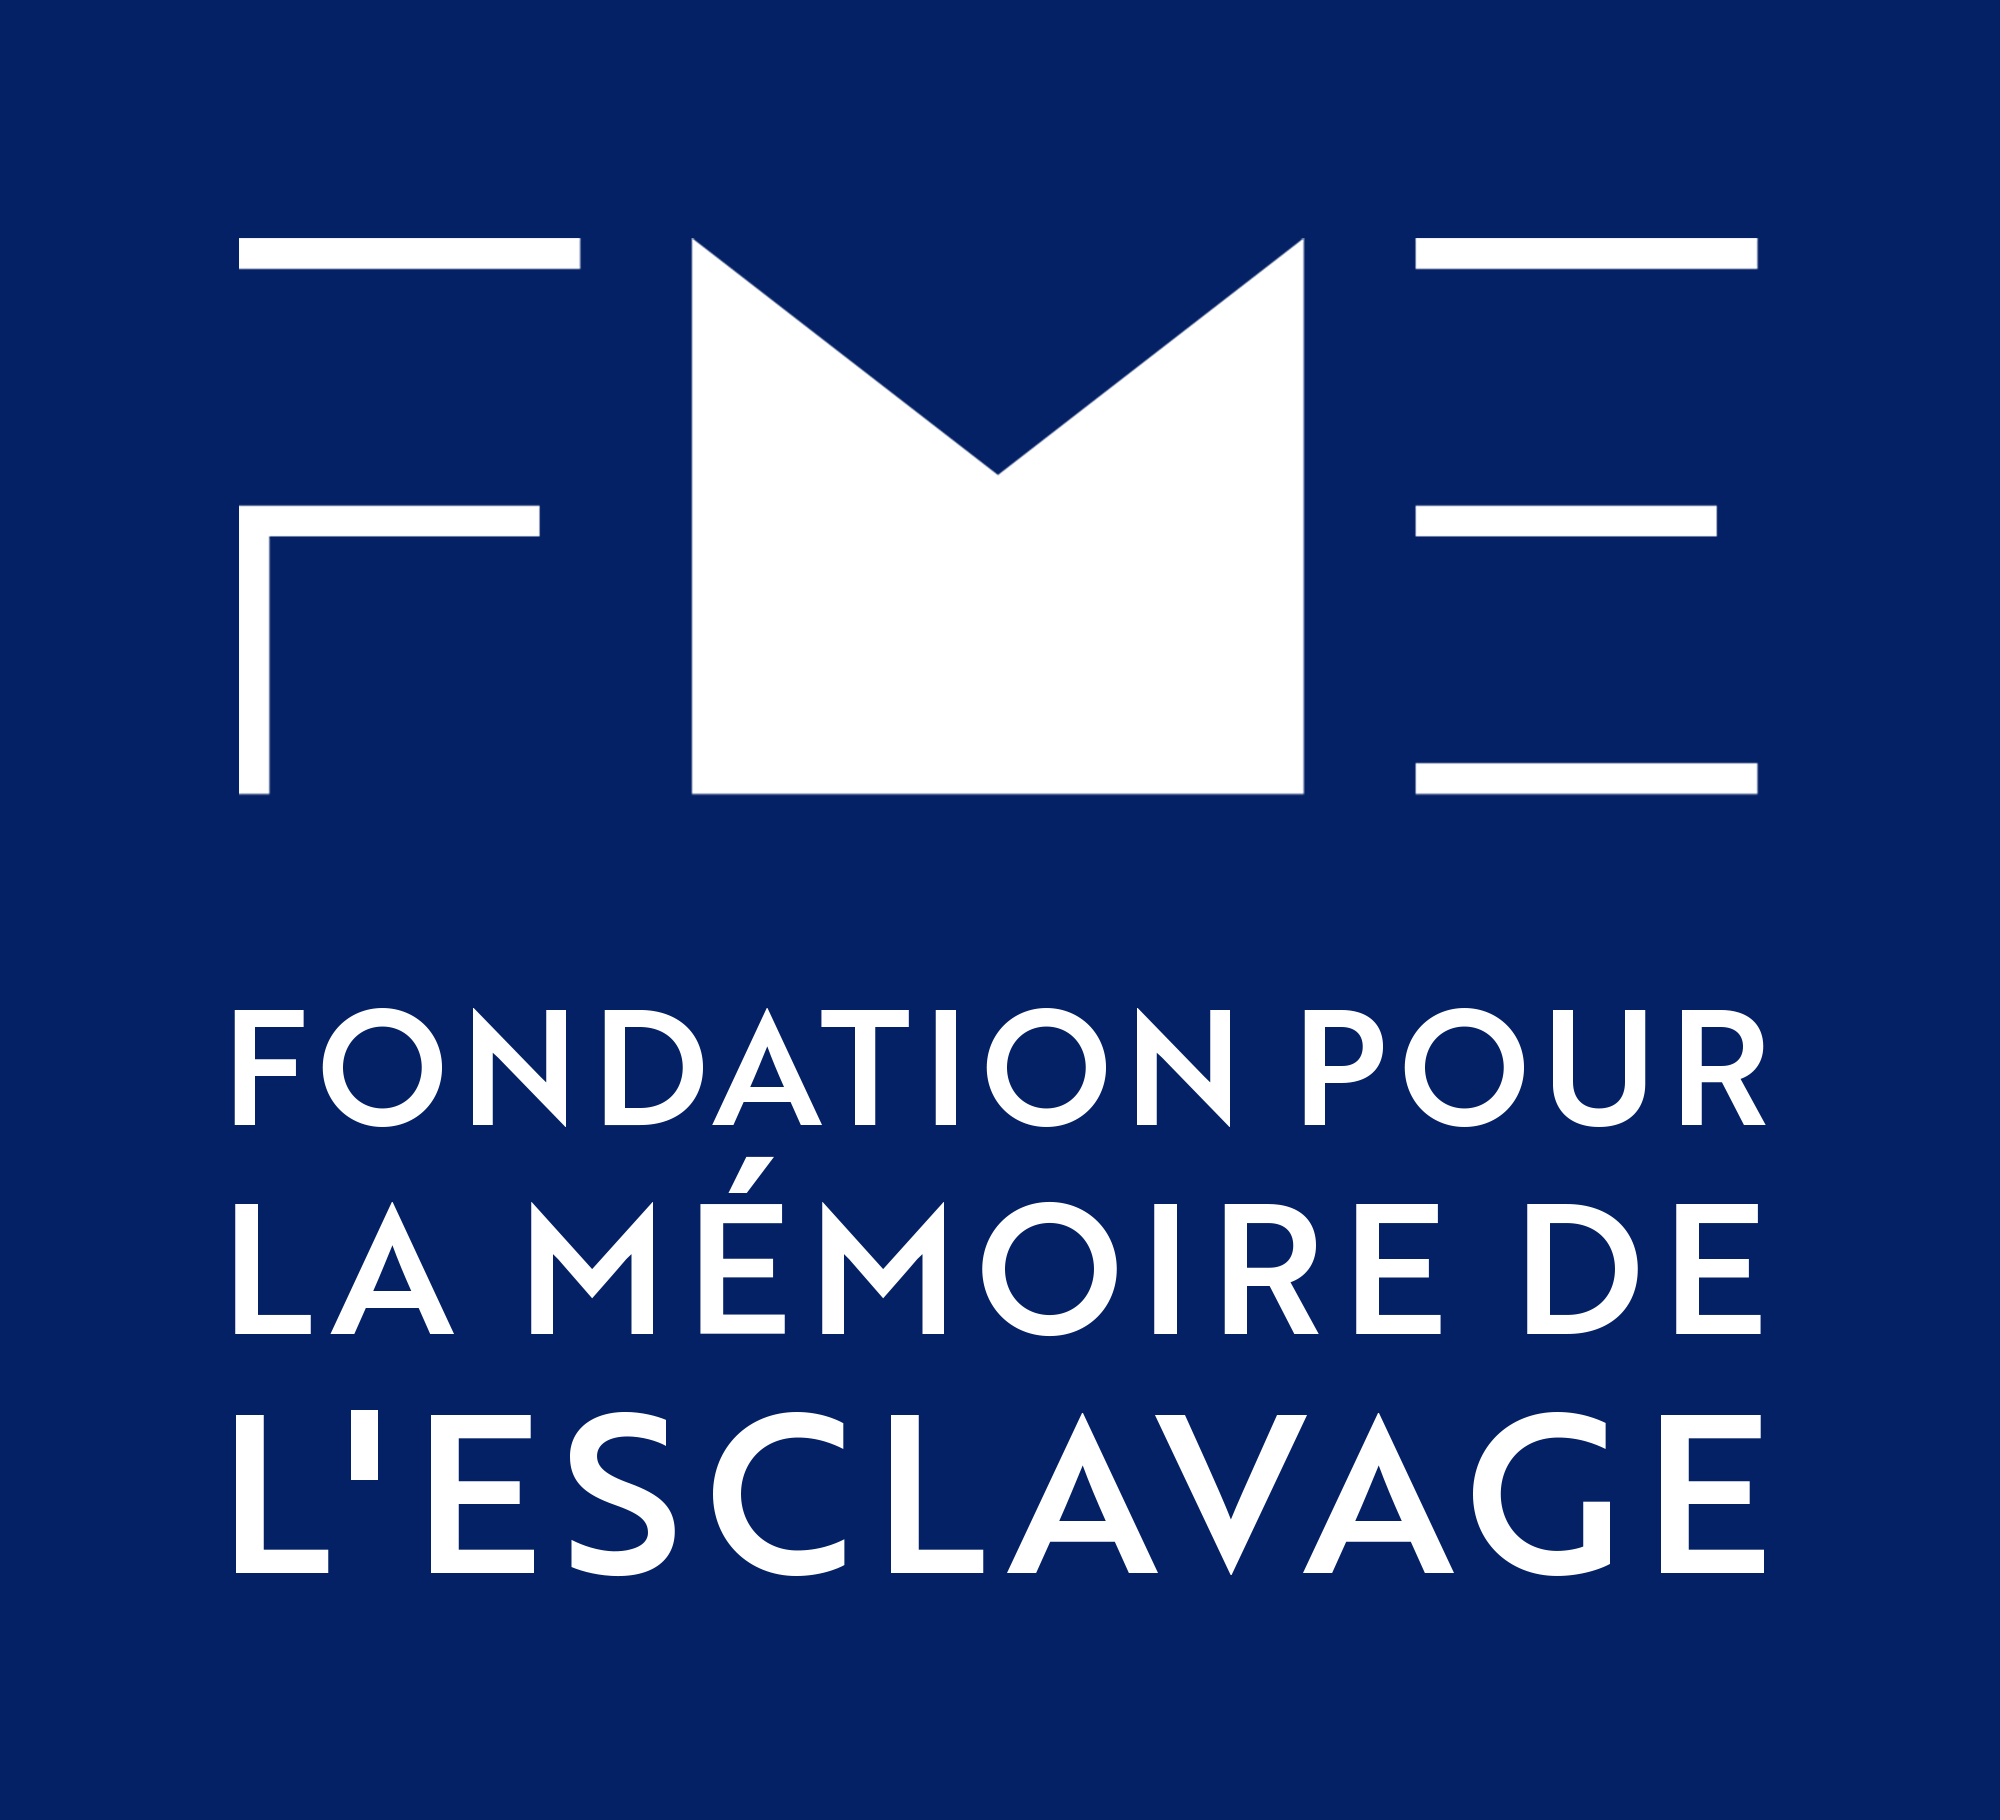 LABEL Fondation por la mémoire de l'esclavage, Fondation pour la mémoire de l'esclavage, Samuel GELAS